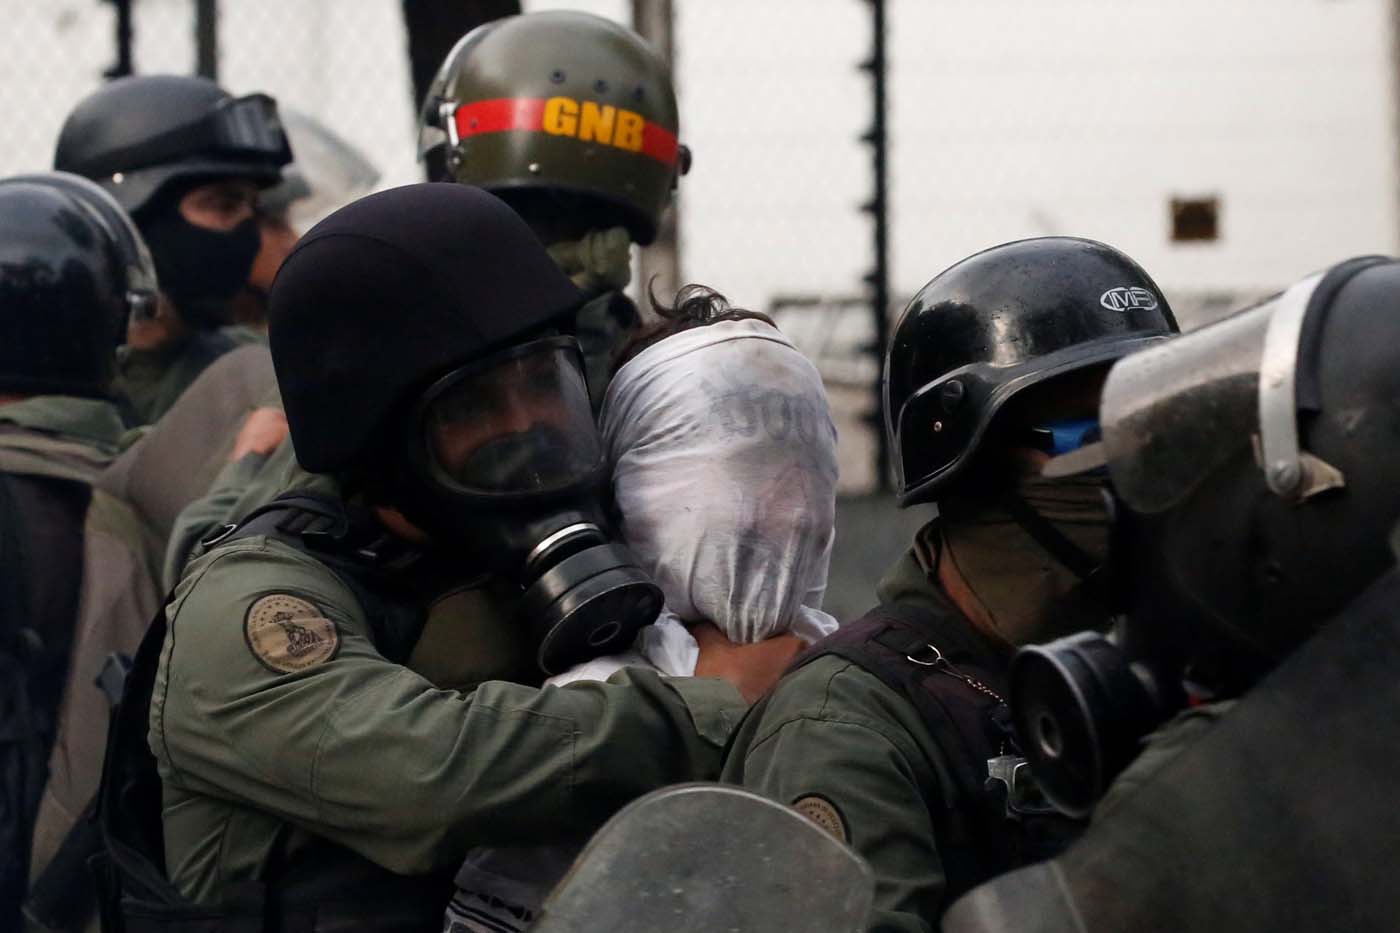 La oposición venezolana liderada por Juan Guaidó instó a denunciar los “crímenes de lesa humanidad” en Venezuela